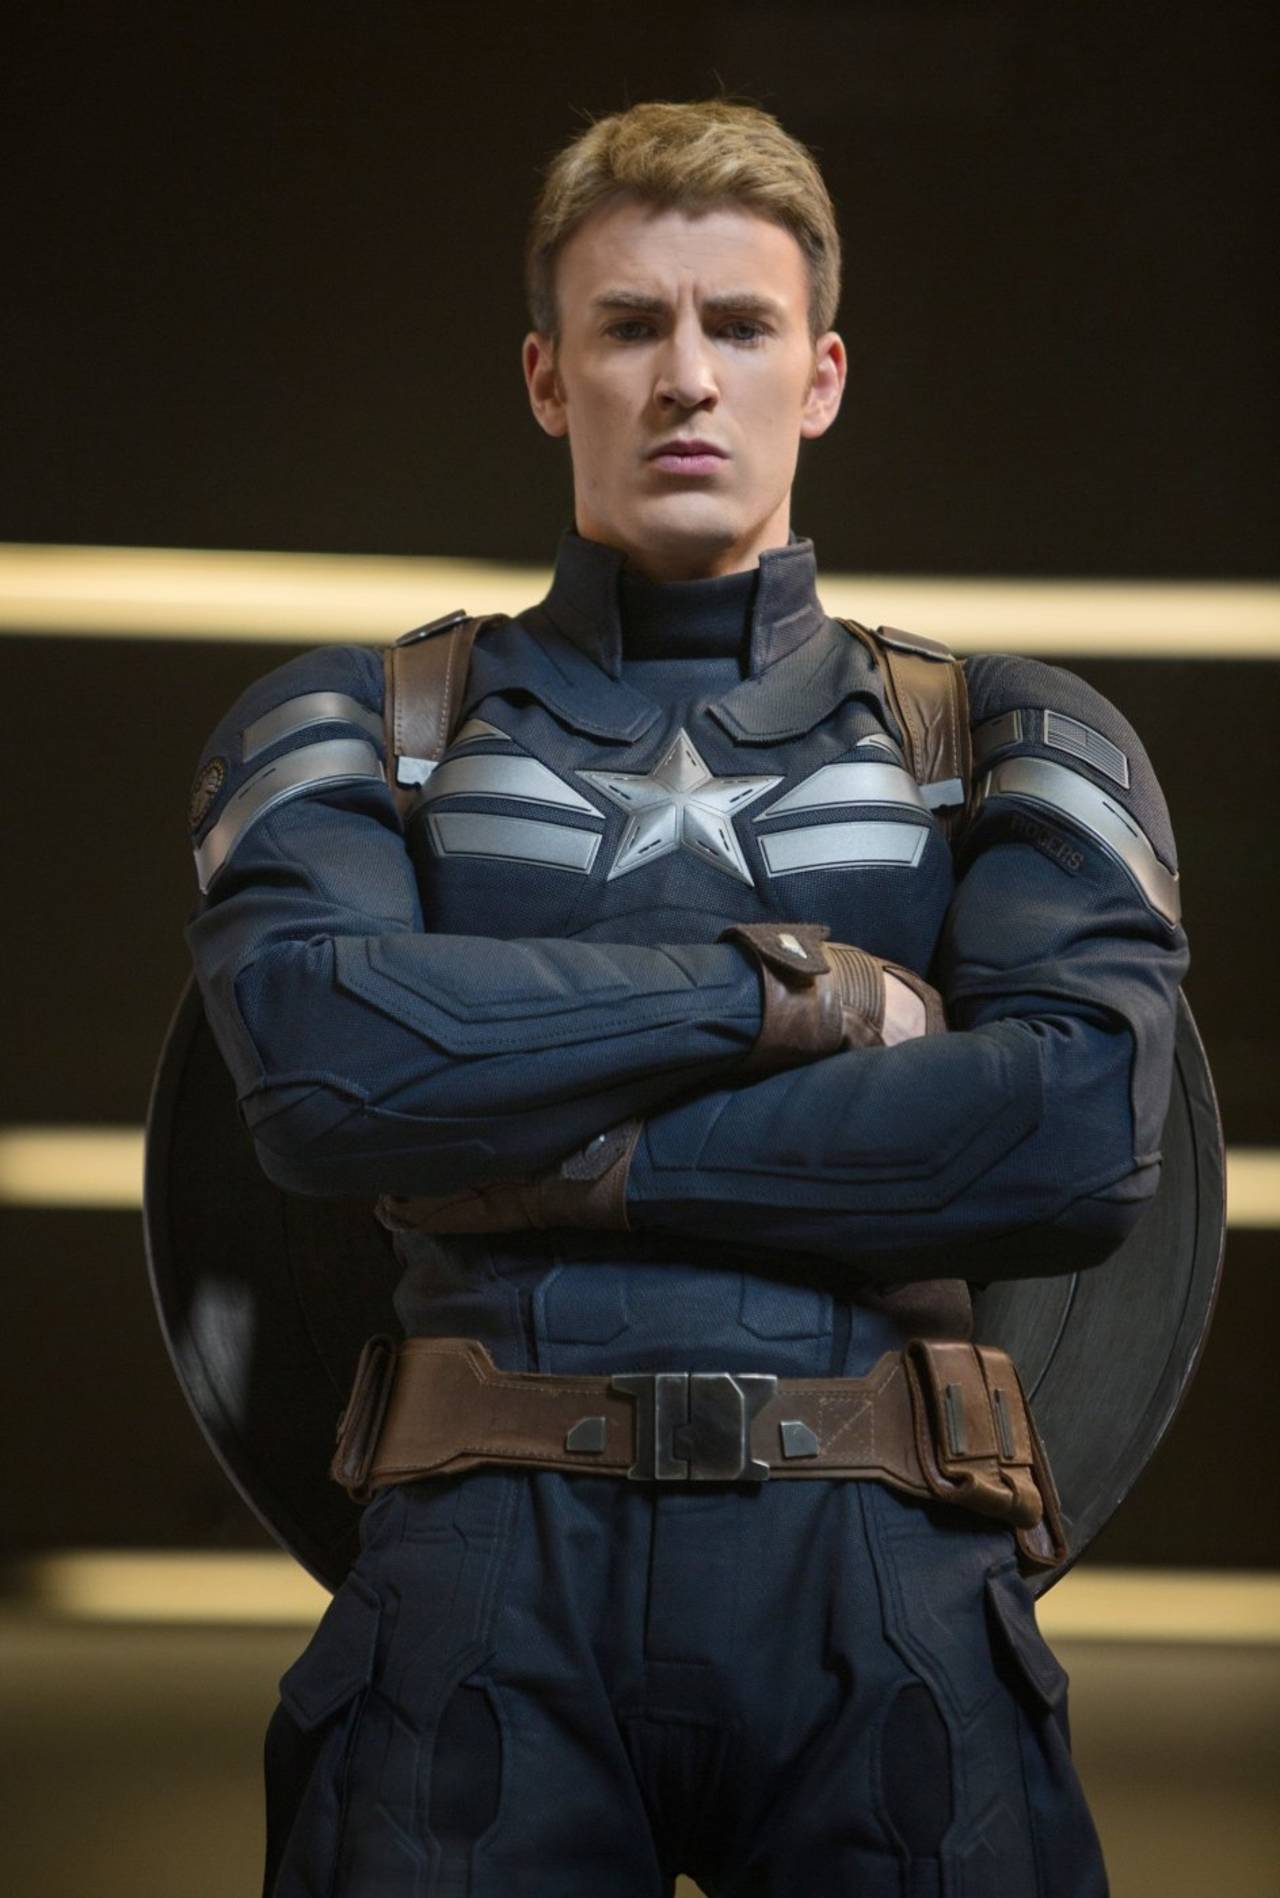 Papel. El actor dio vida al personaje desde el 2011 en Capitán América: El primer vengador y aún mantiene su contrato.